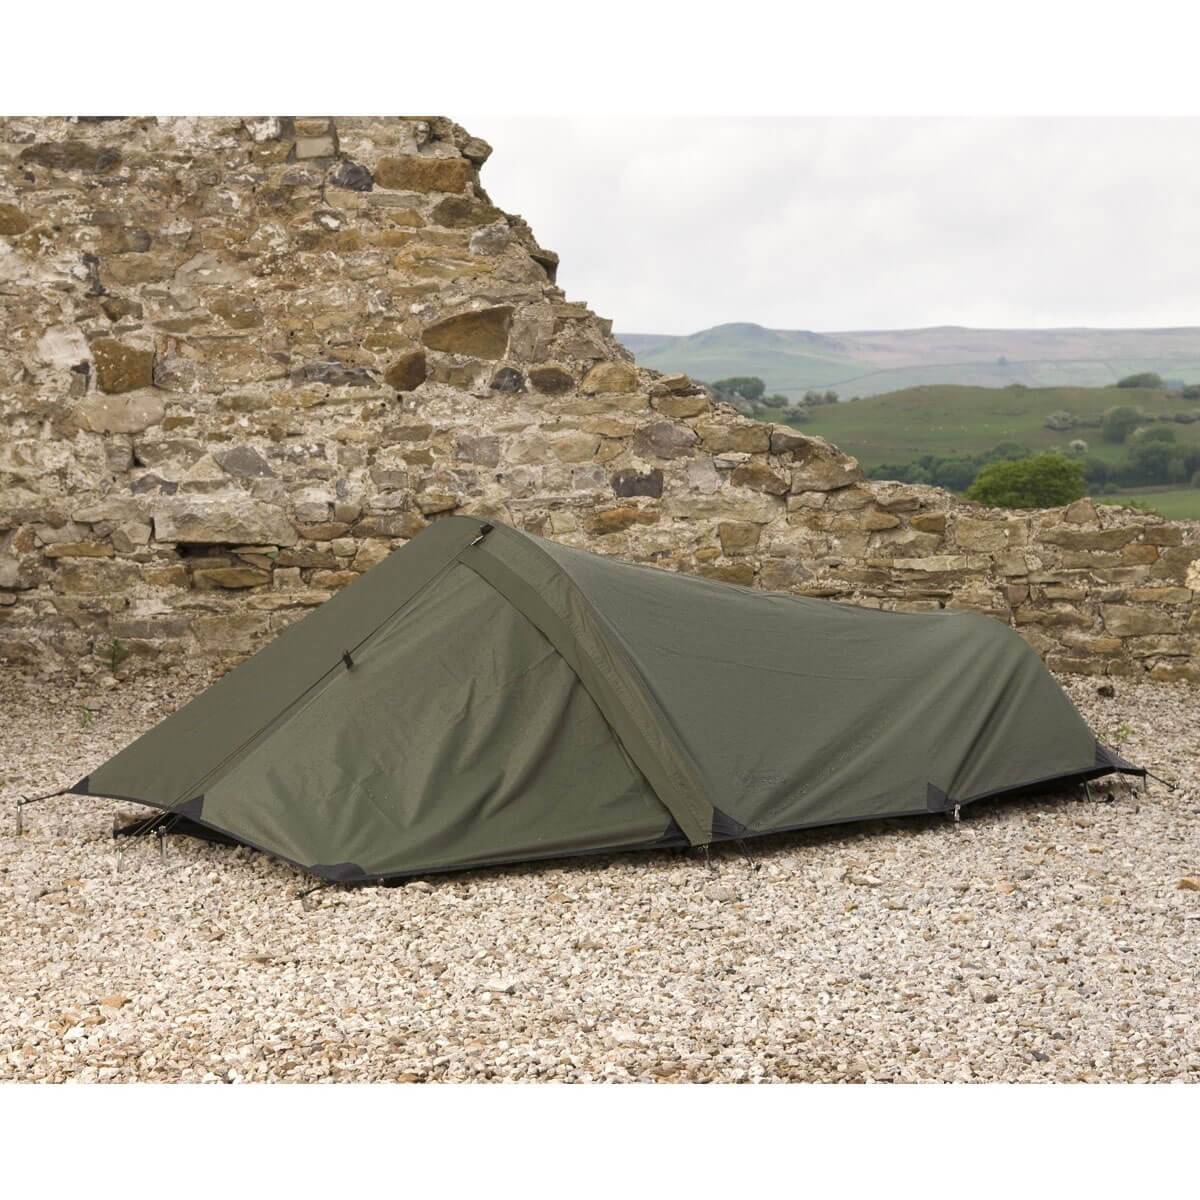 Snugpak Ionosphere Bivvi Tent - One Person Shelter - John Bull Clothing